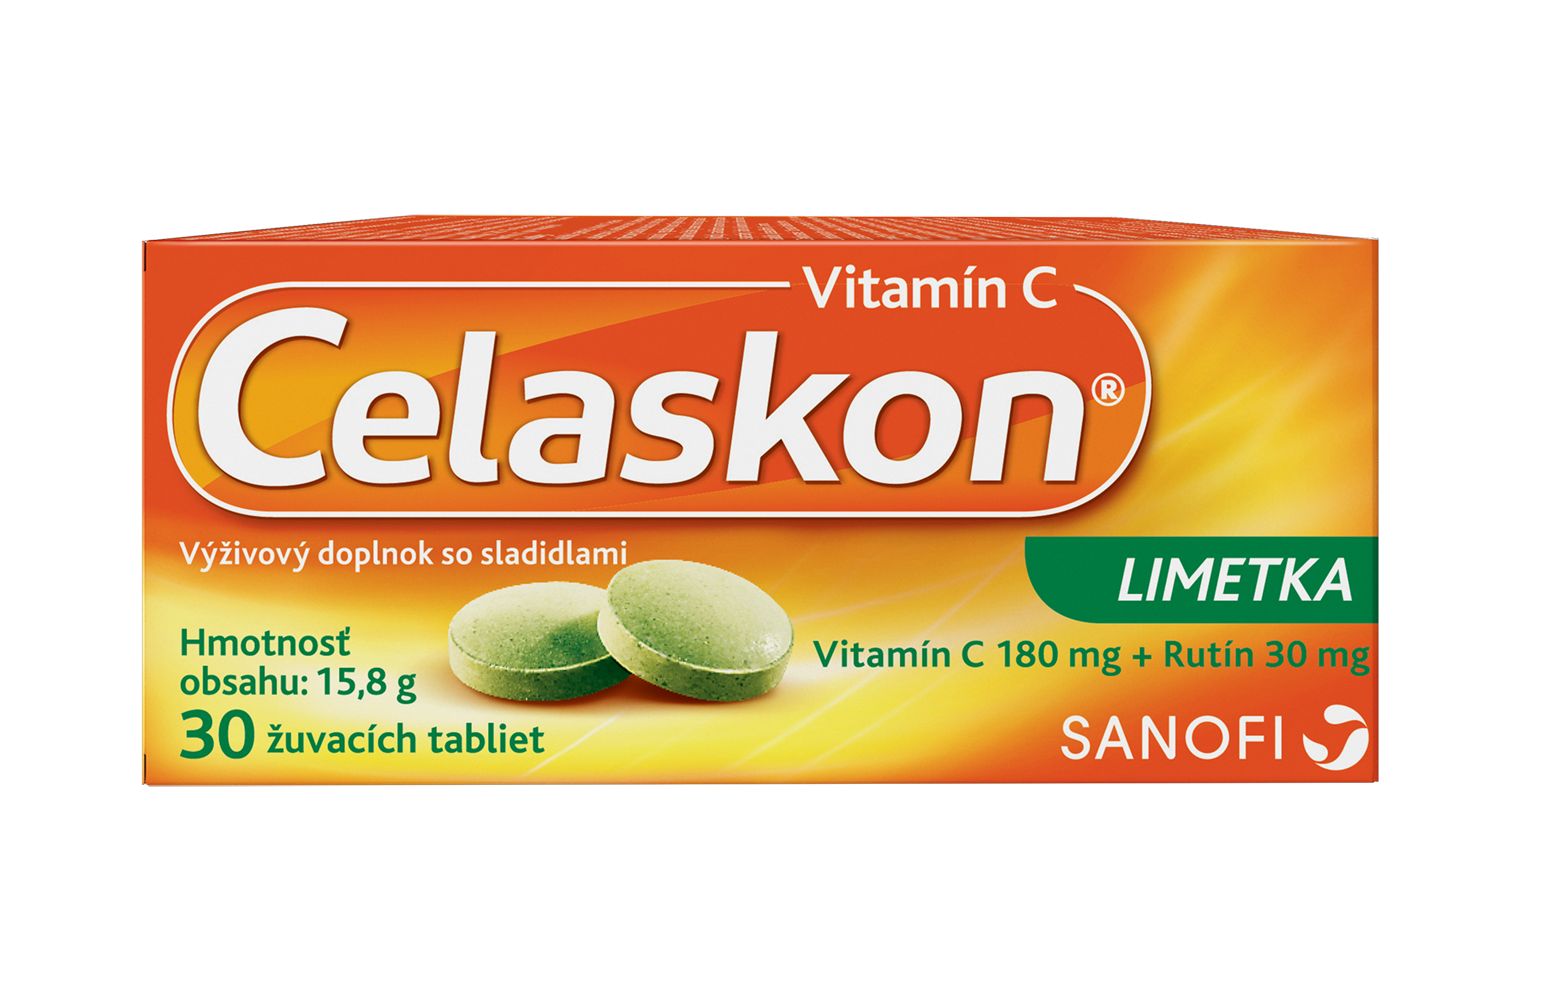 Celaskon Limetka 30 žvýkacích tablet Celaskon